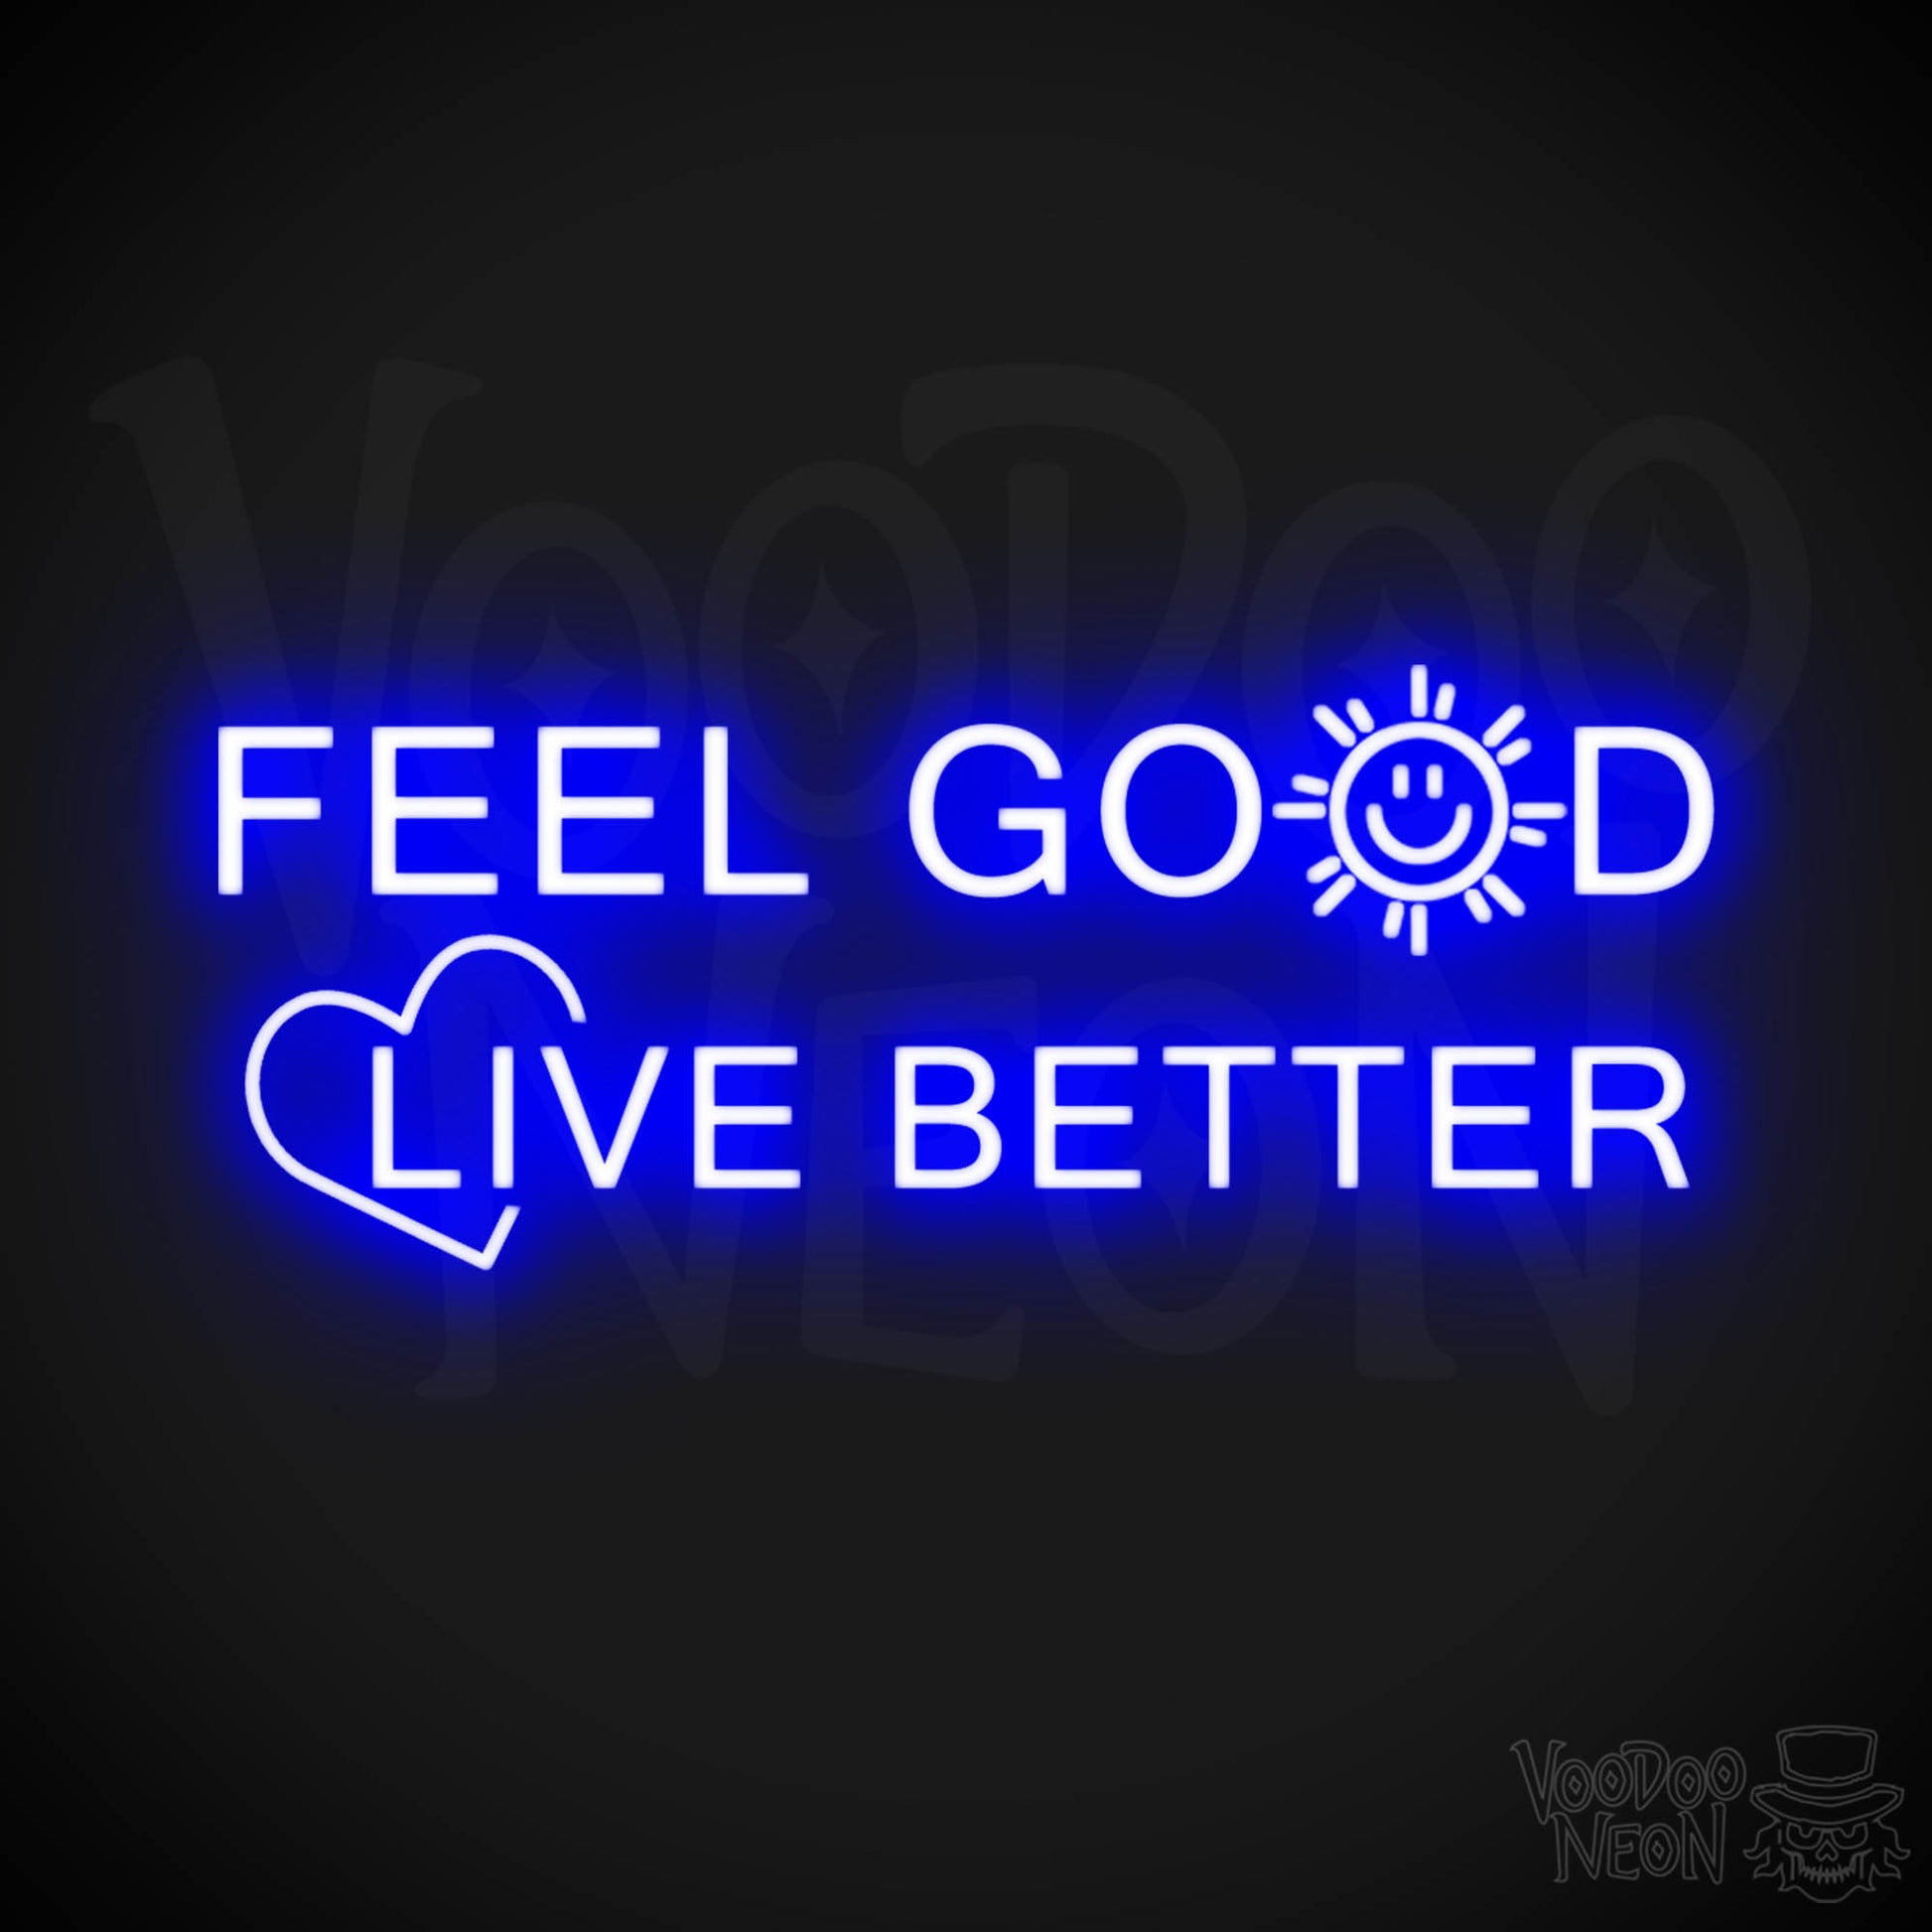 Feel Good Live Better Neon Sign - Feel Good Live Better Sign - Color Dark Blue